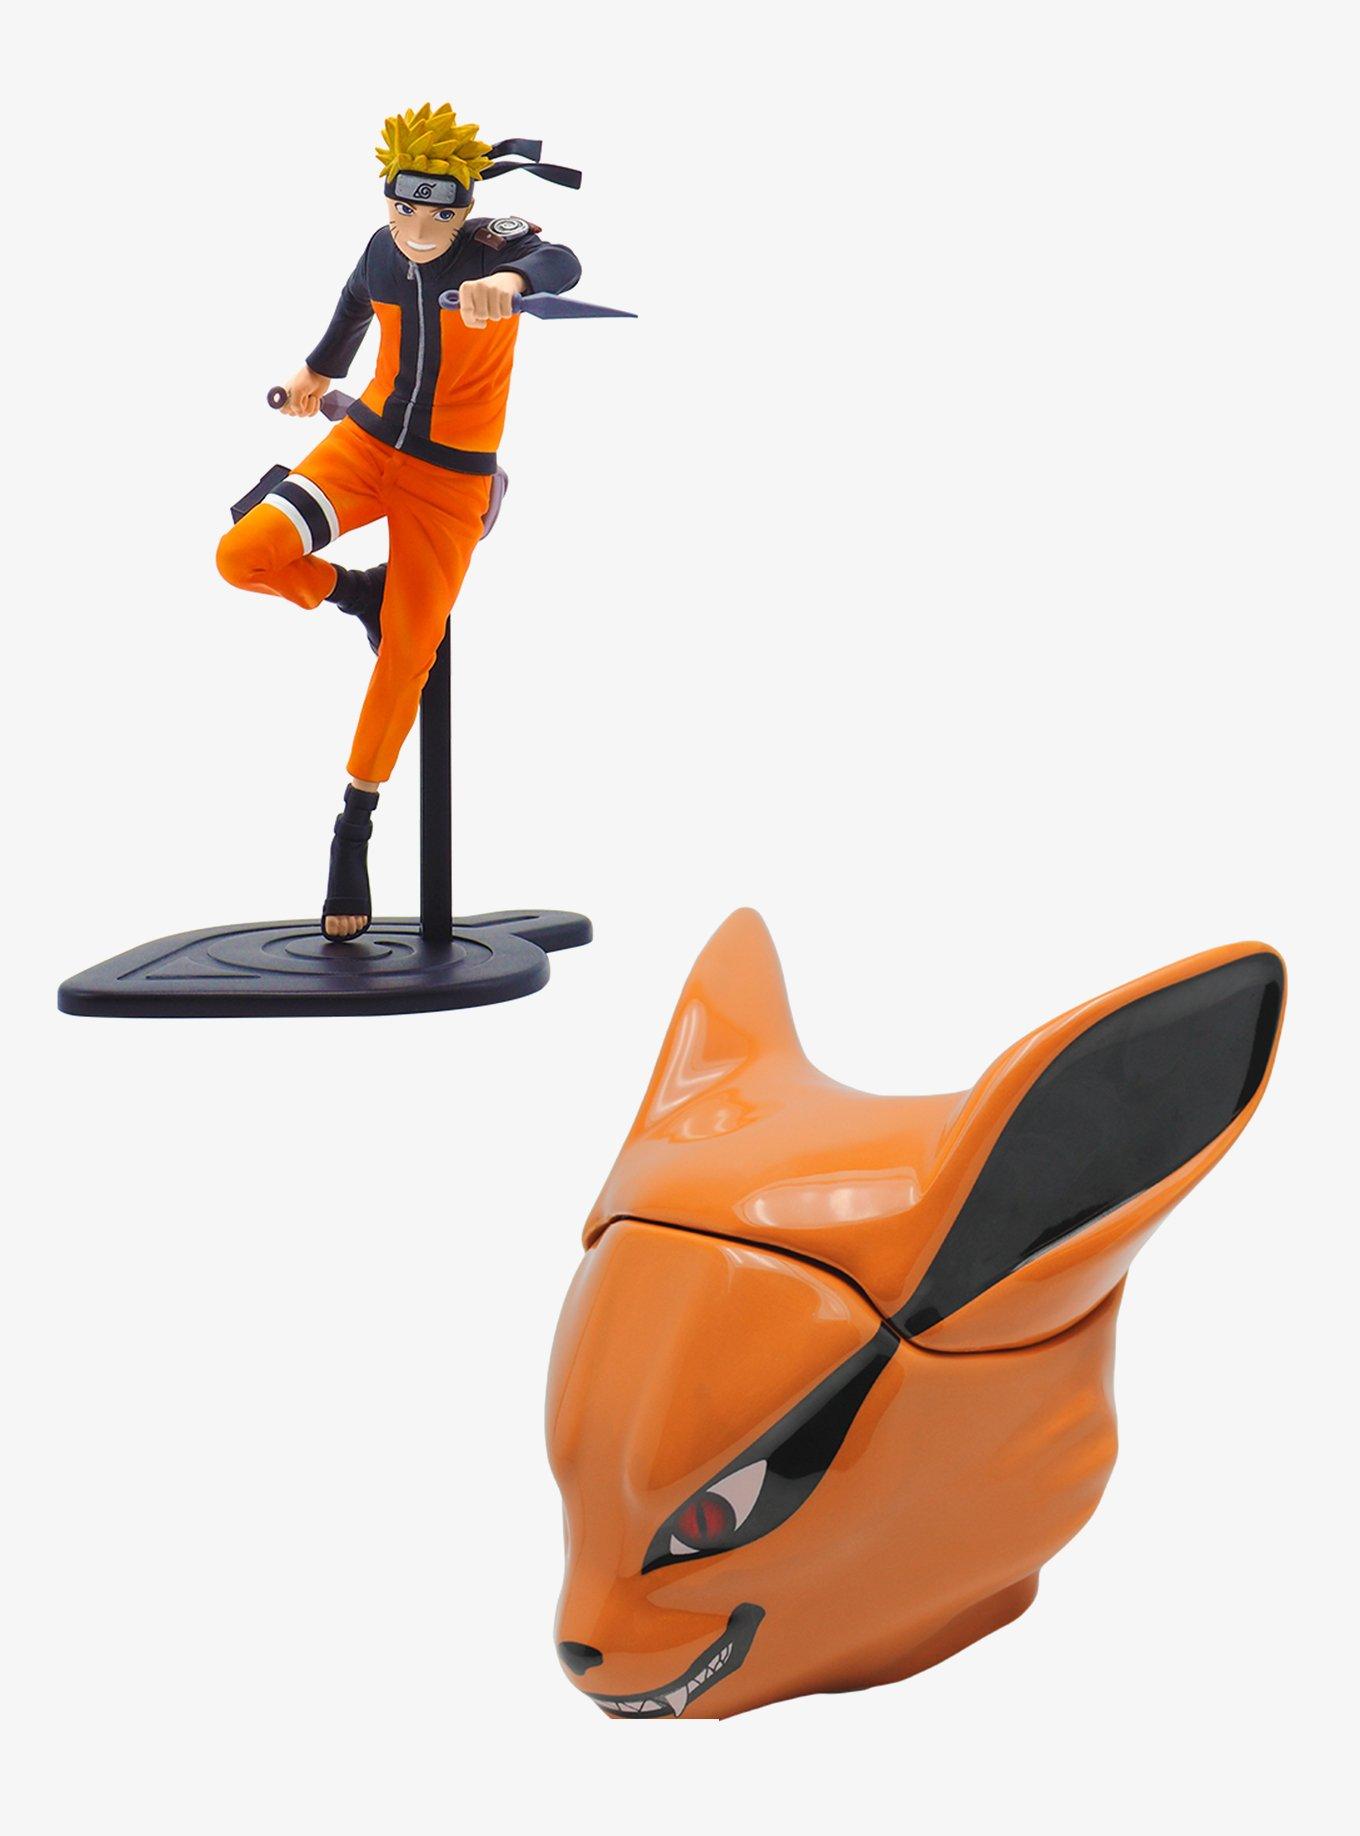 NARUTO - Figurine SFC 17cm - Naruto